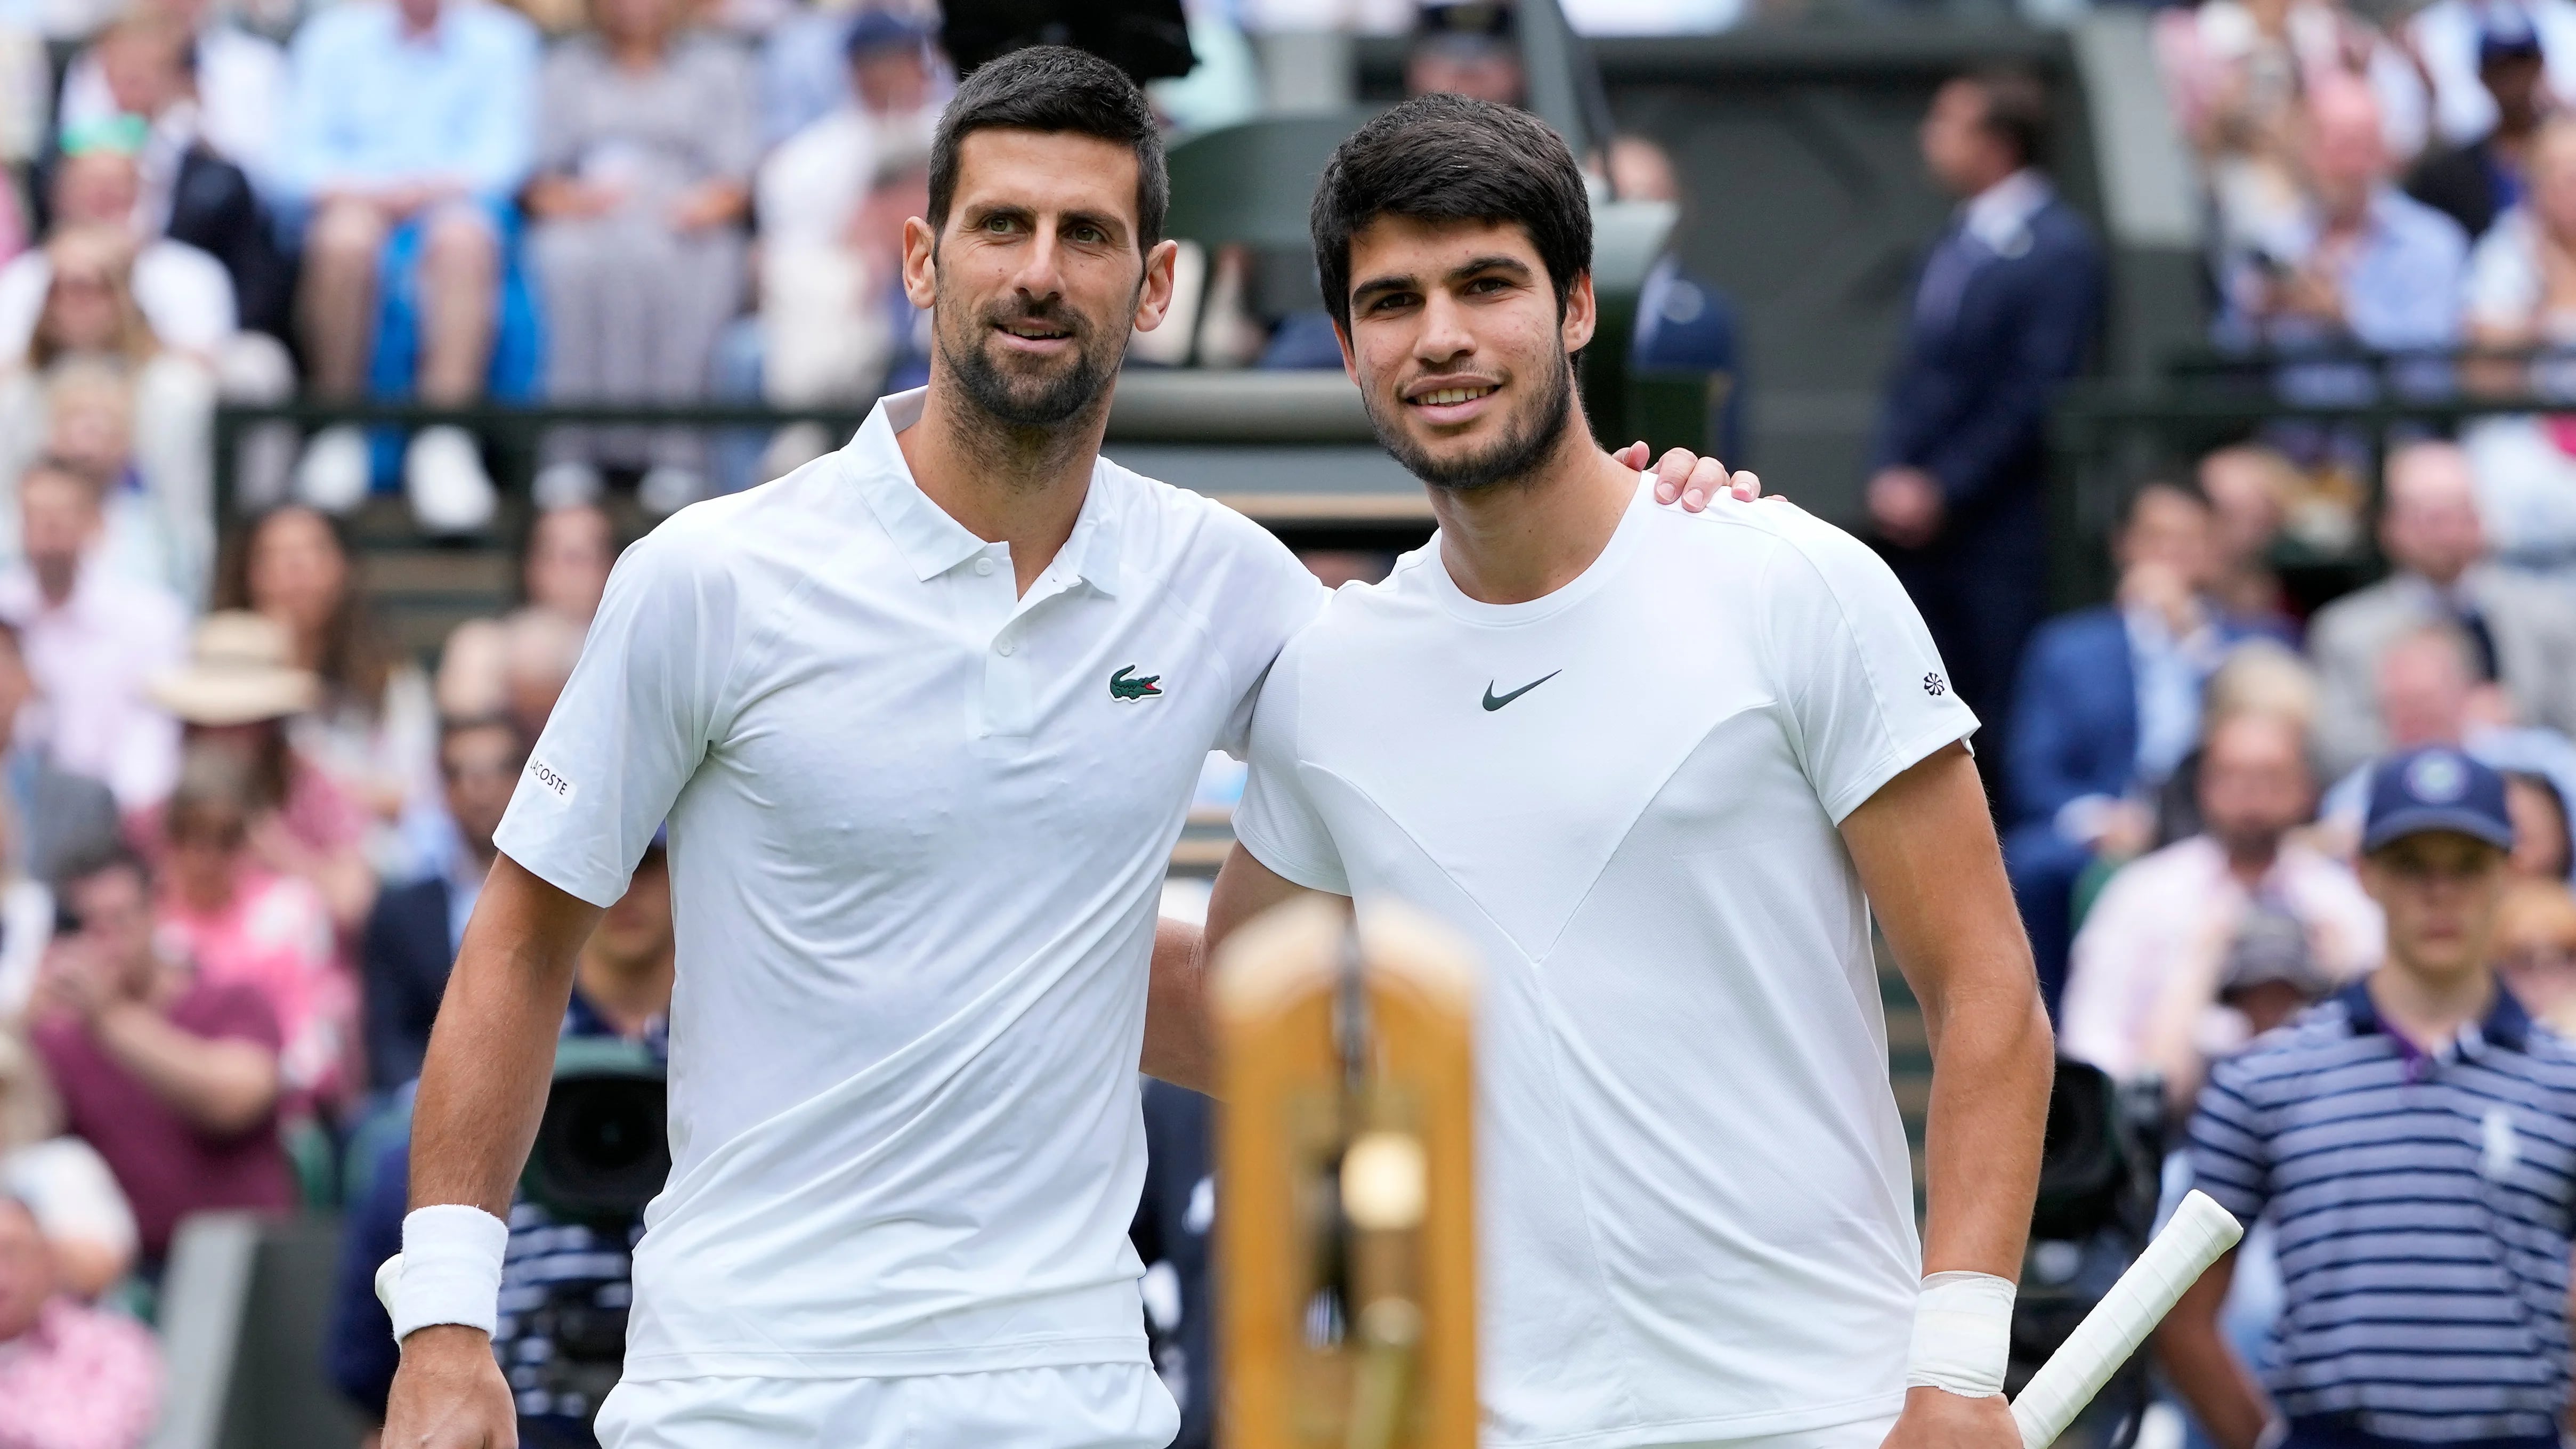 El cariñoso mensaje de Djokovic a Alcaraz tras ganar el US Open